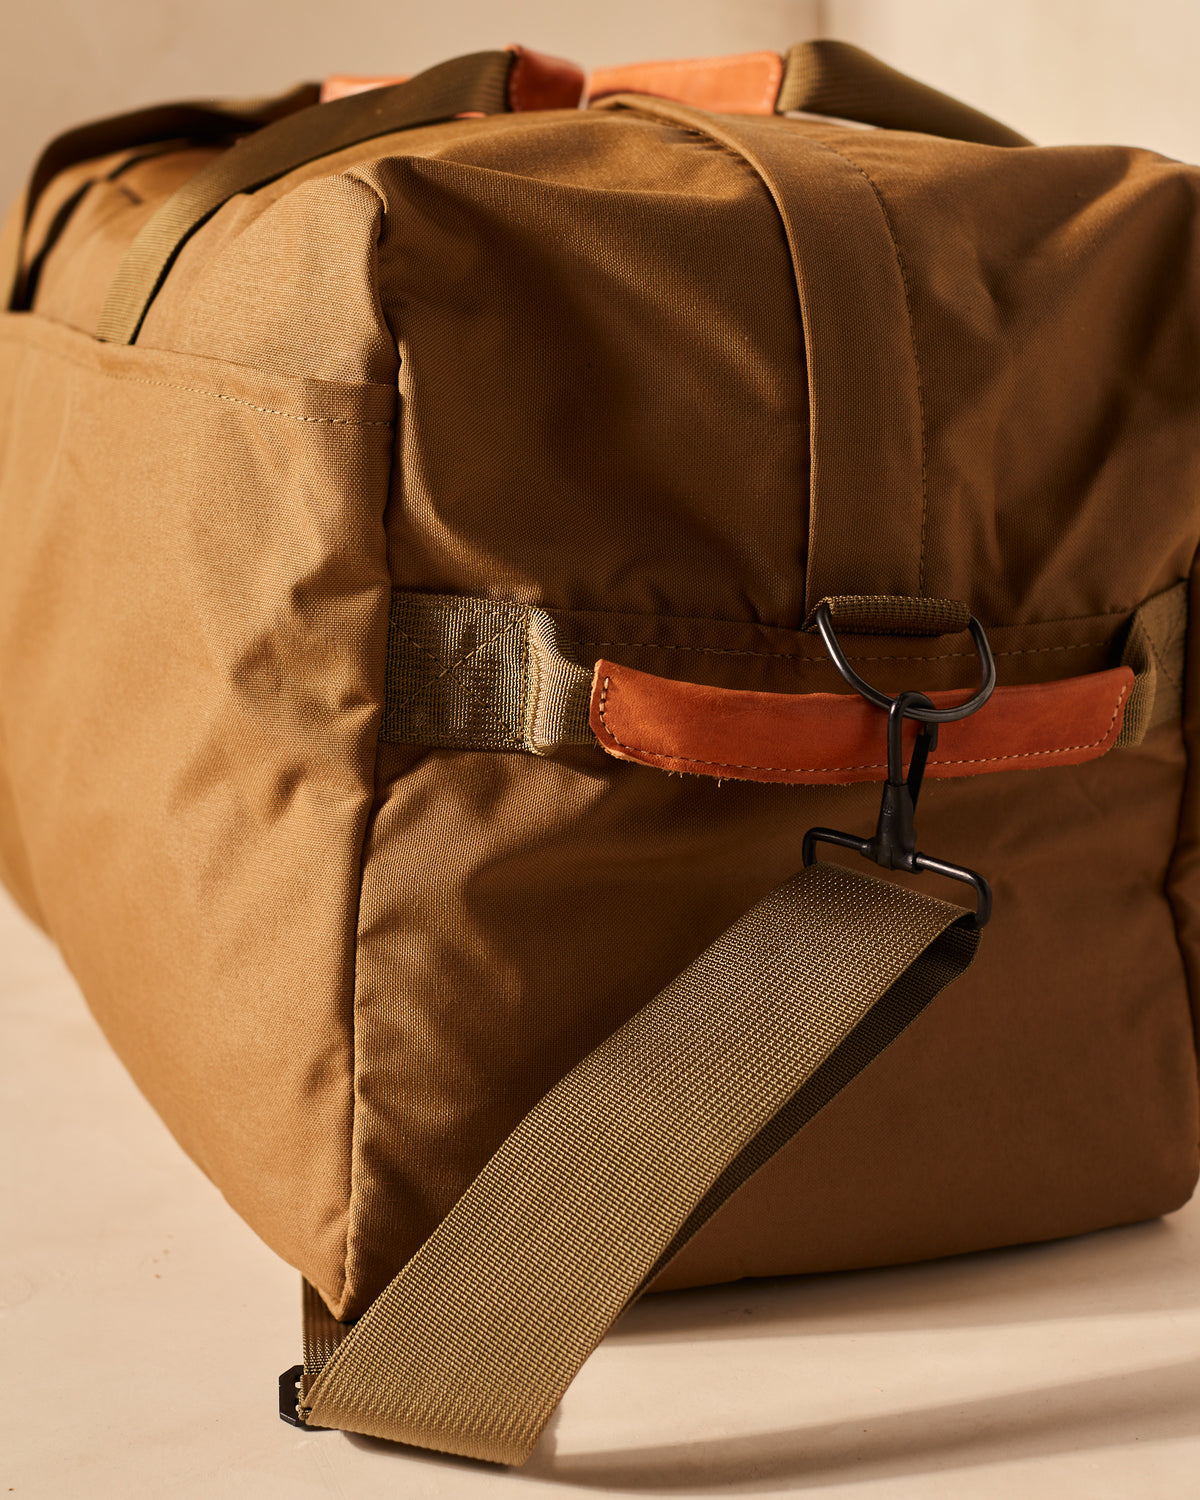 22 Best Duffel Bags for Men in 2023